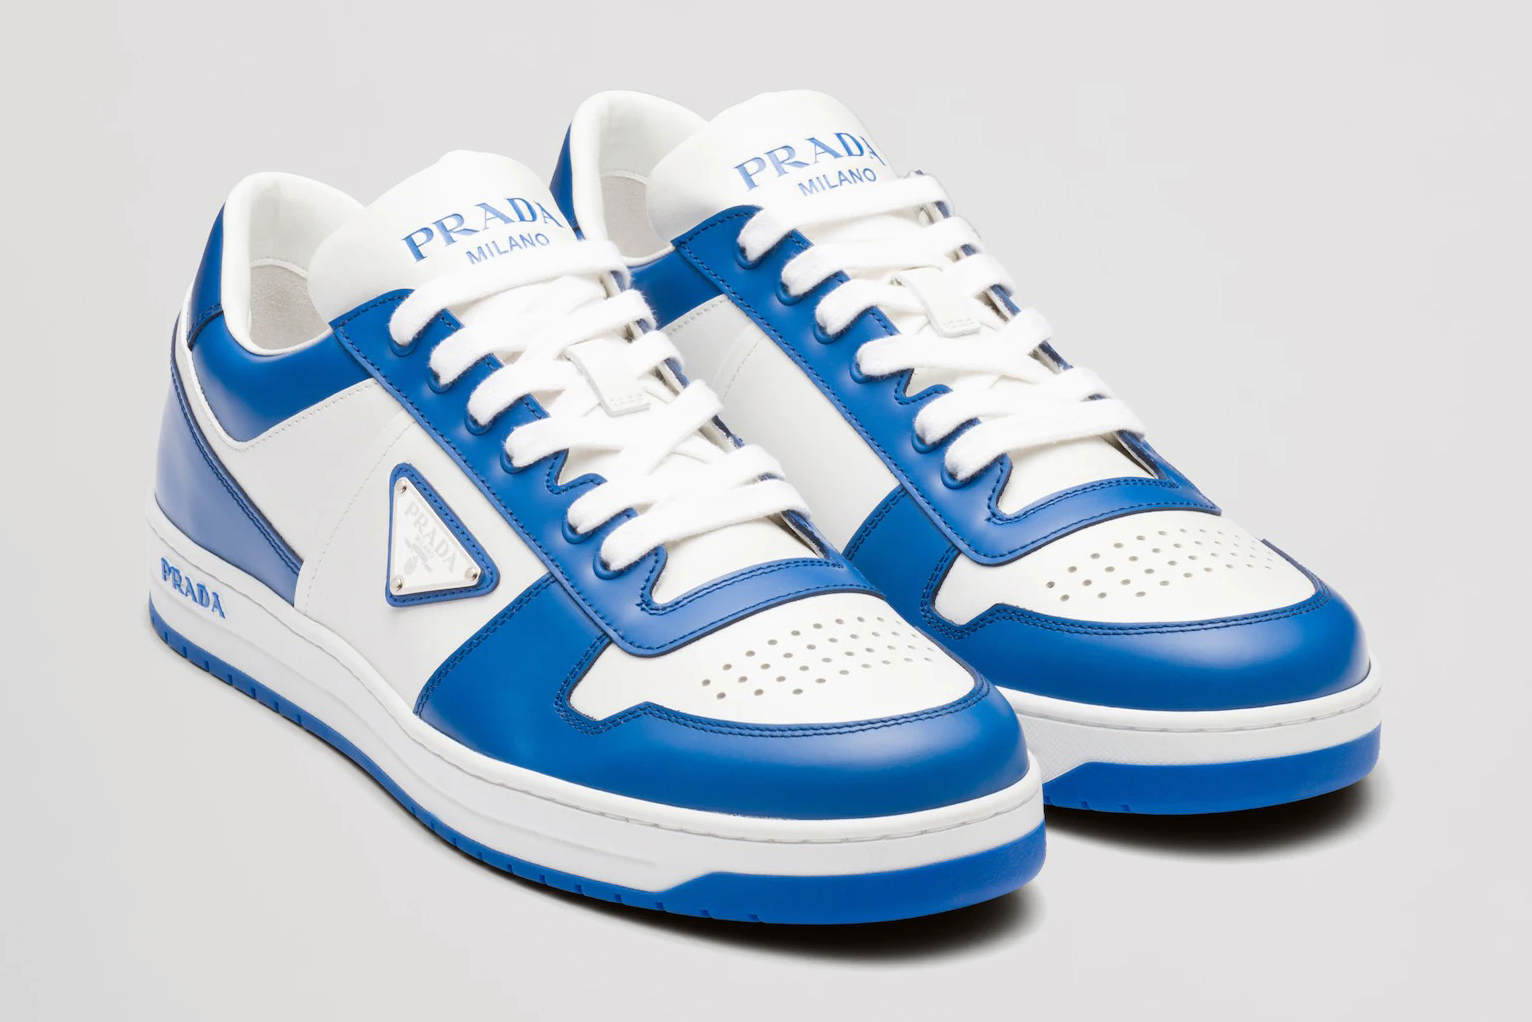 Prada's Downtown Sneakers Look Like Air Force 1s